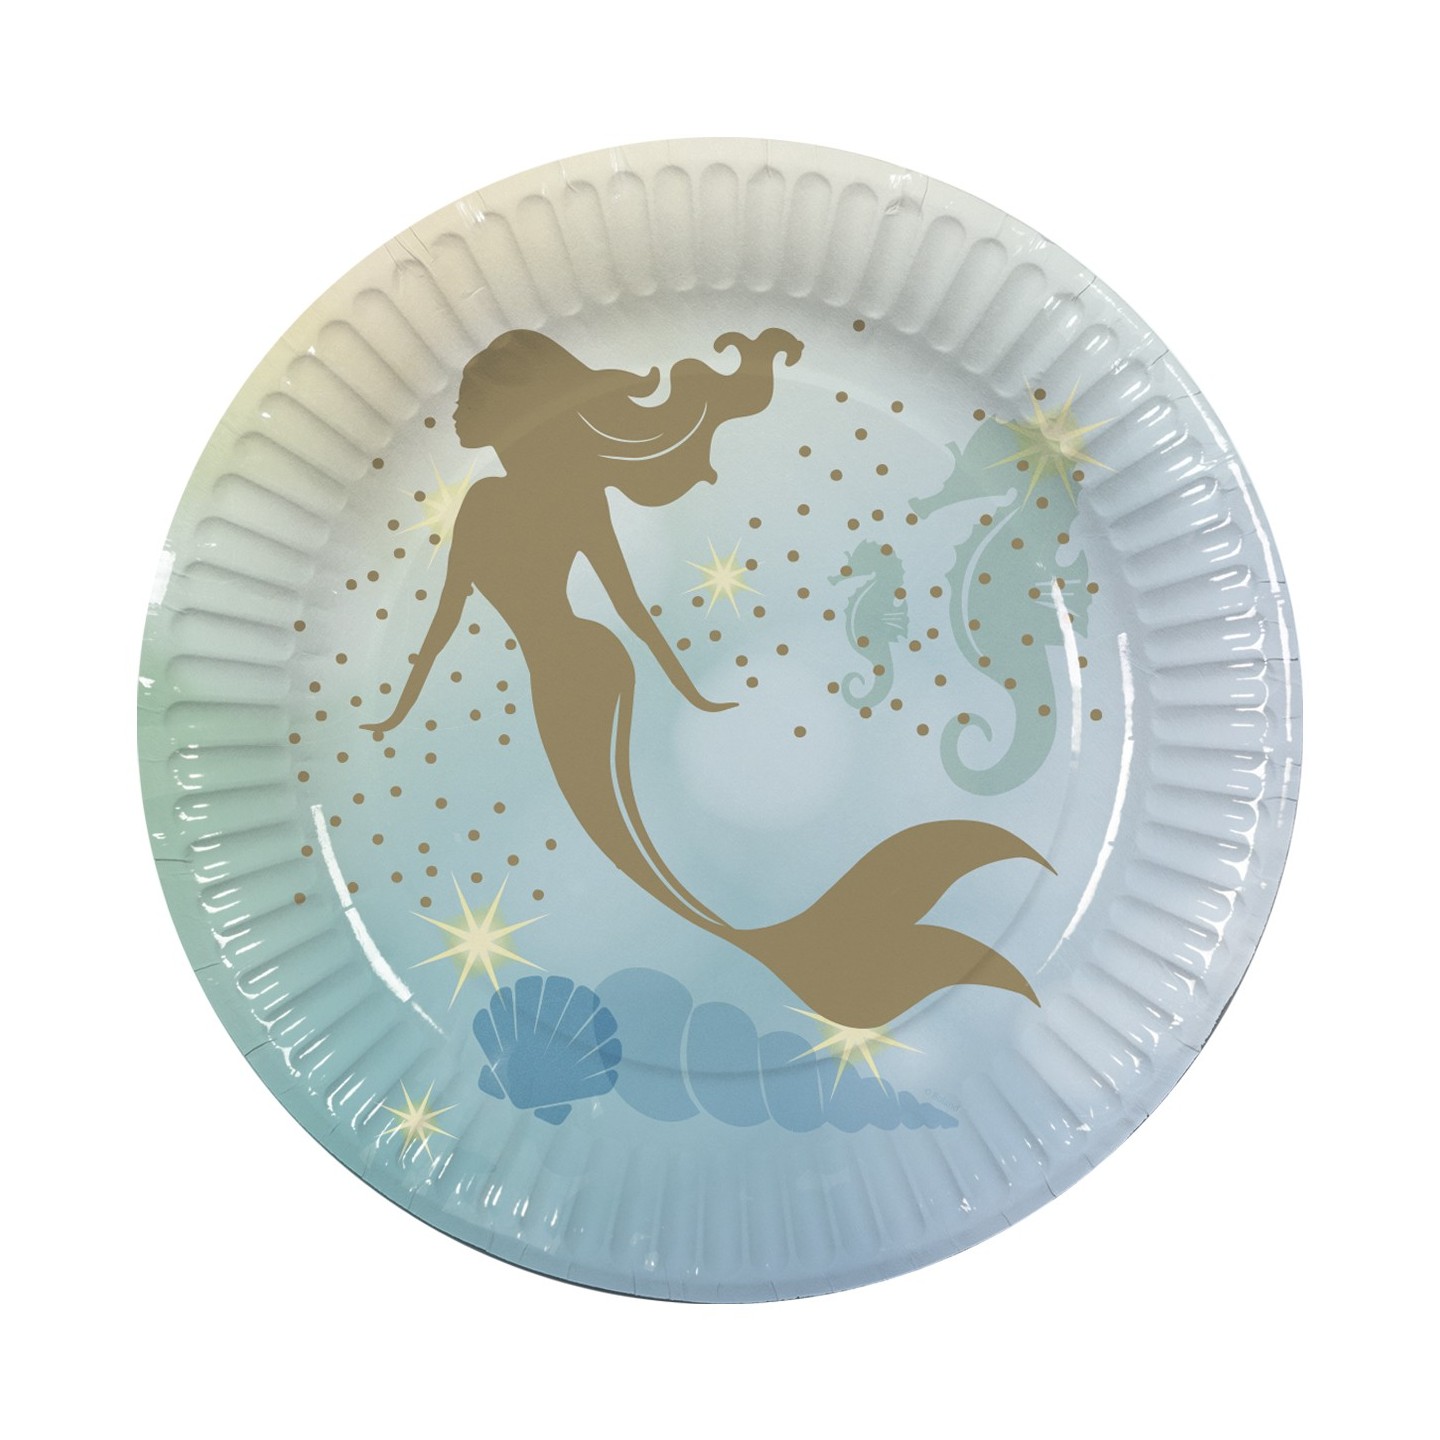 kartonnen zeemeermin bordjes tafeldecoratie mermaid versiering